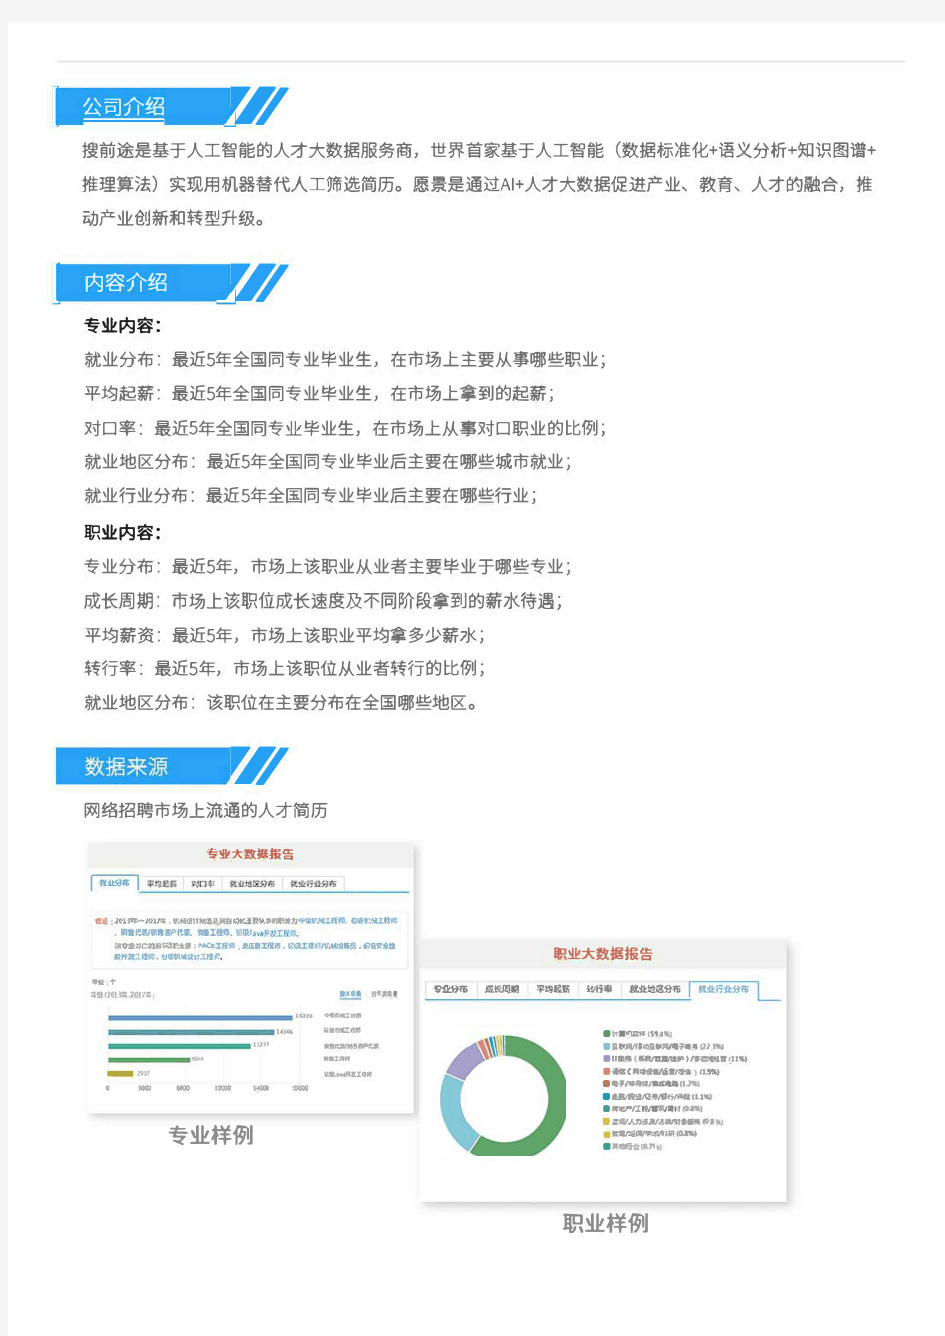 2013-2017年北京邮电大学工商管理专业毕业生就业大数据报告